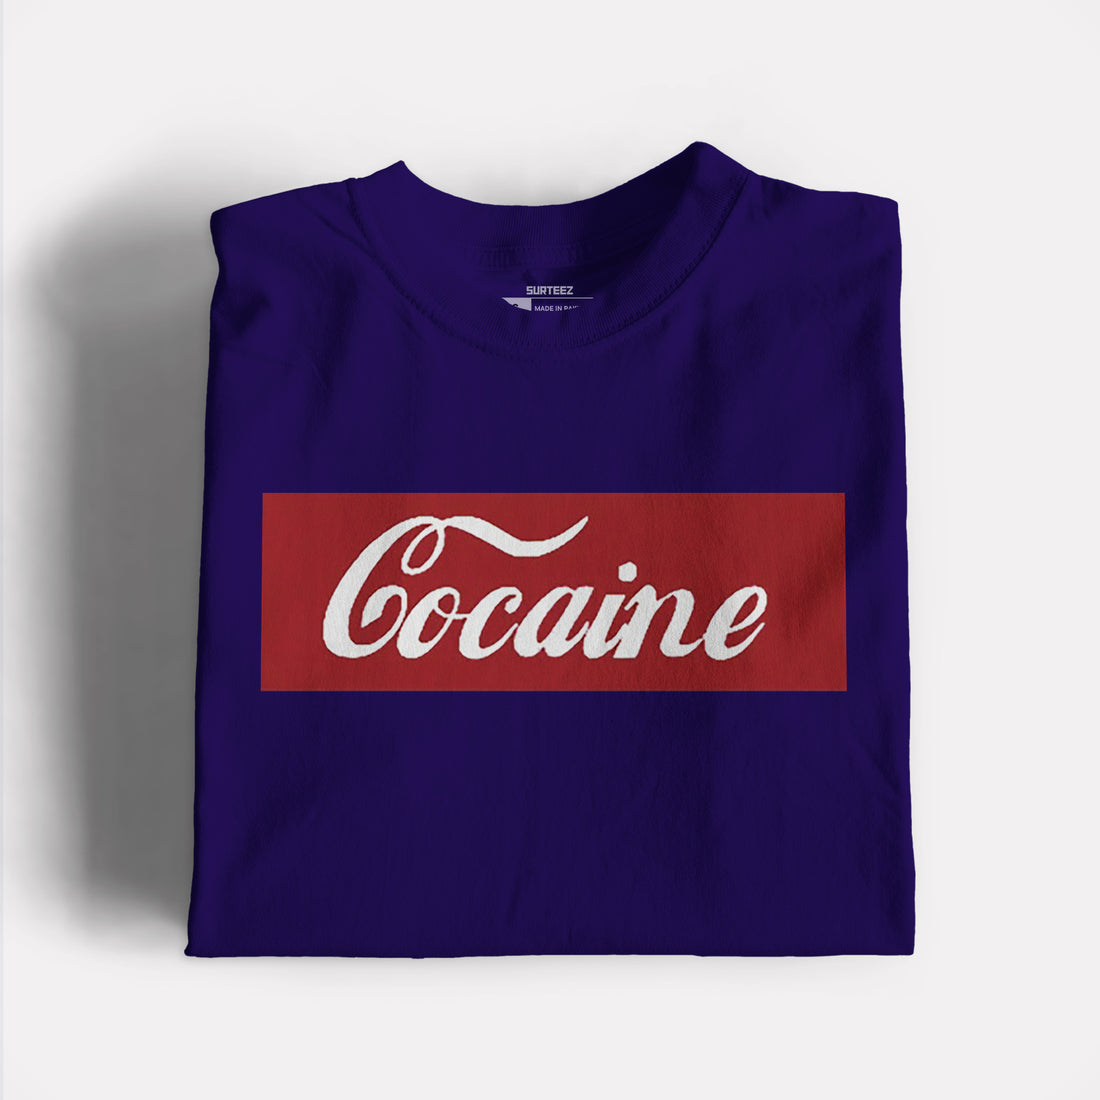 Cocaine Graphic Tee